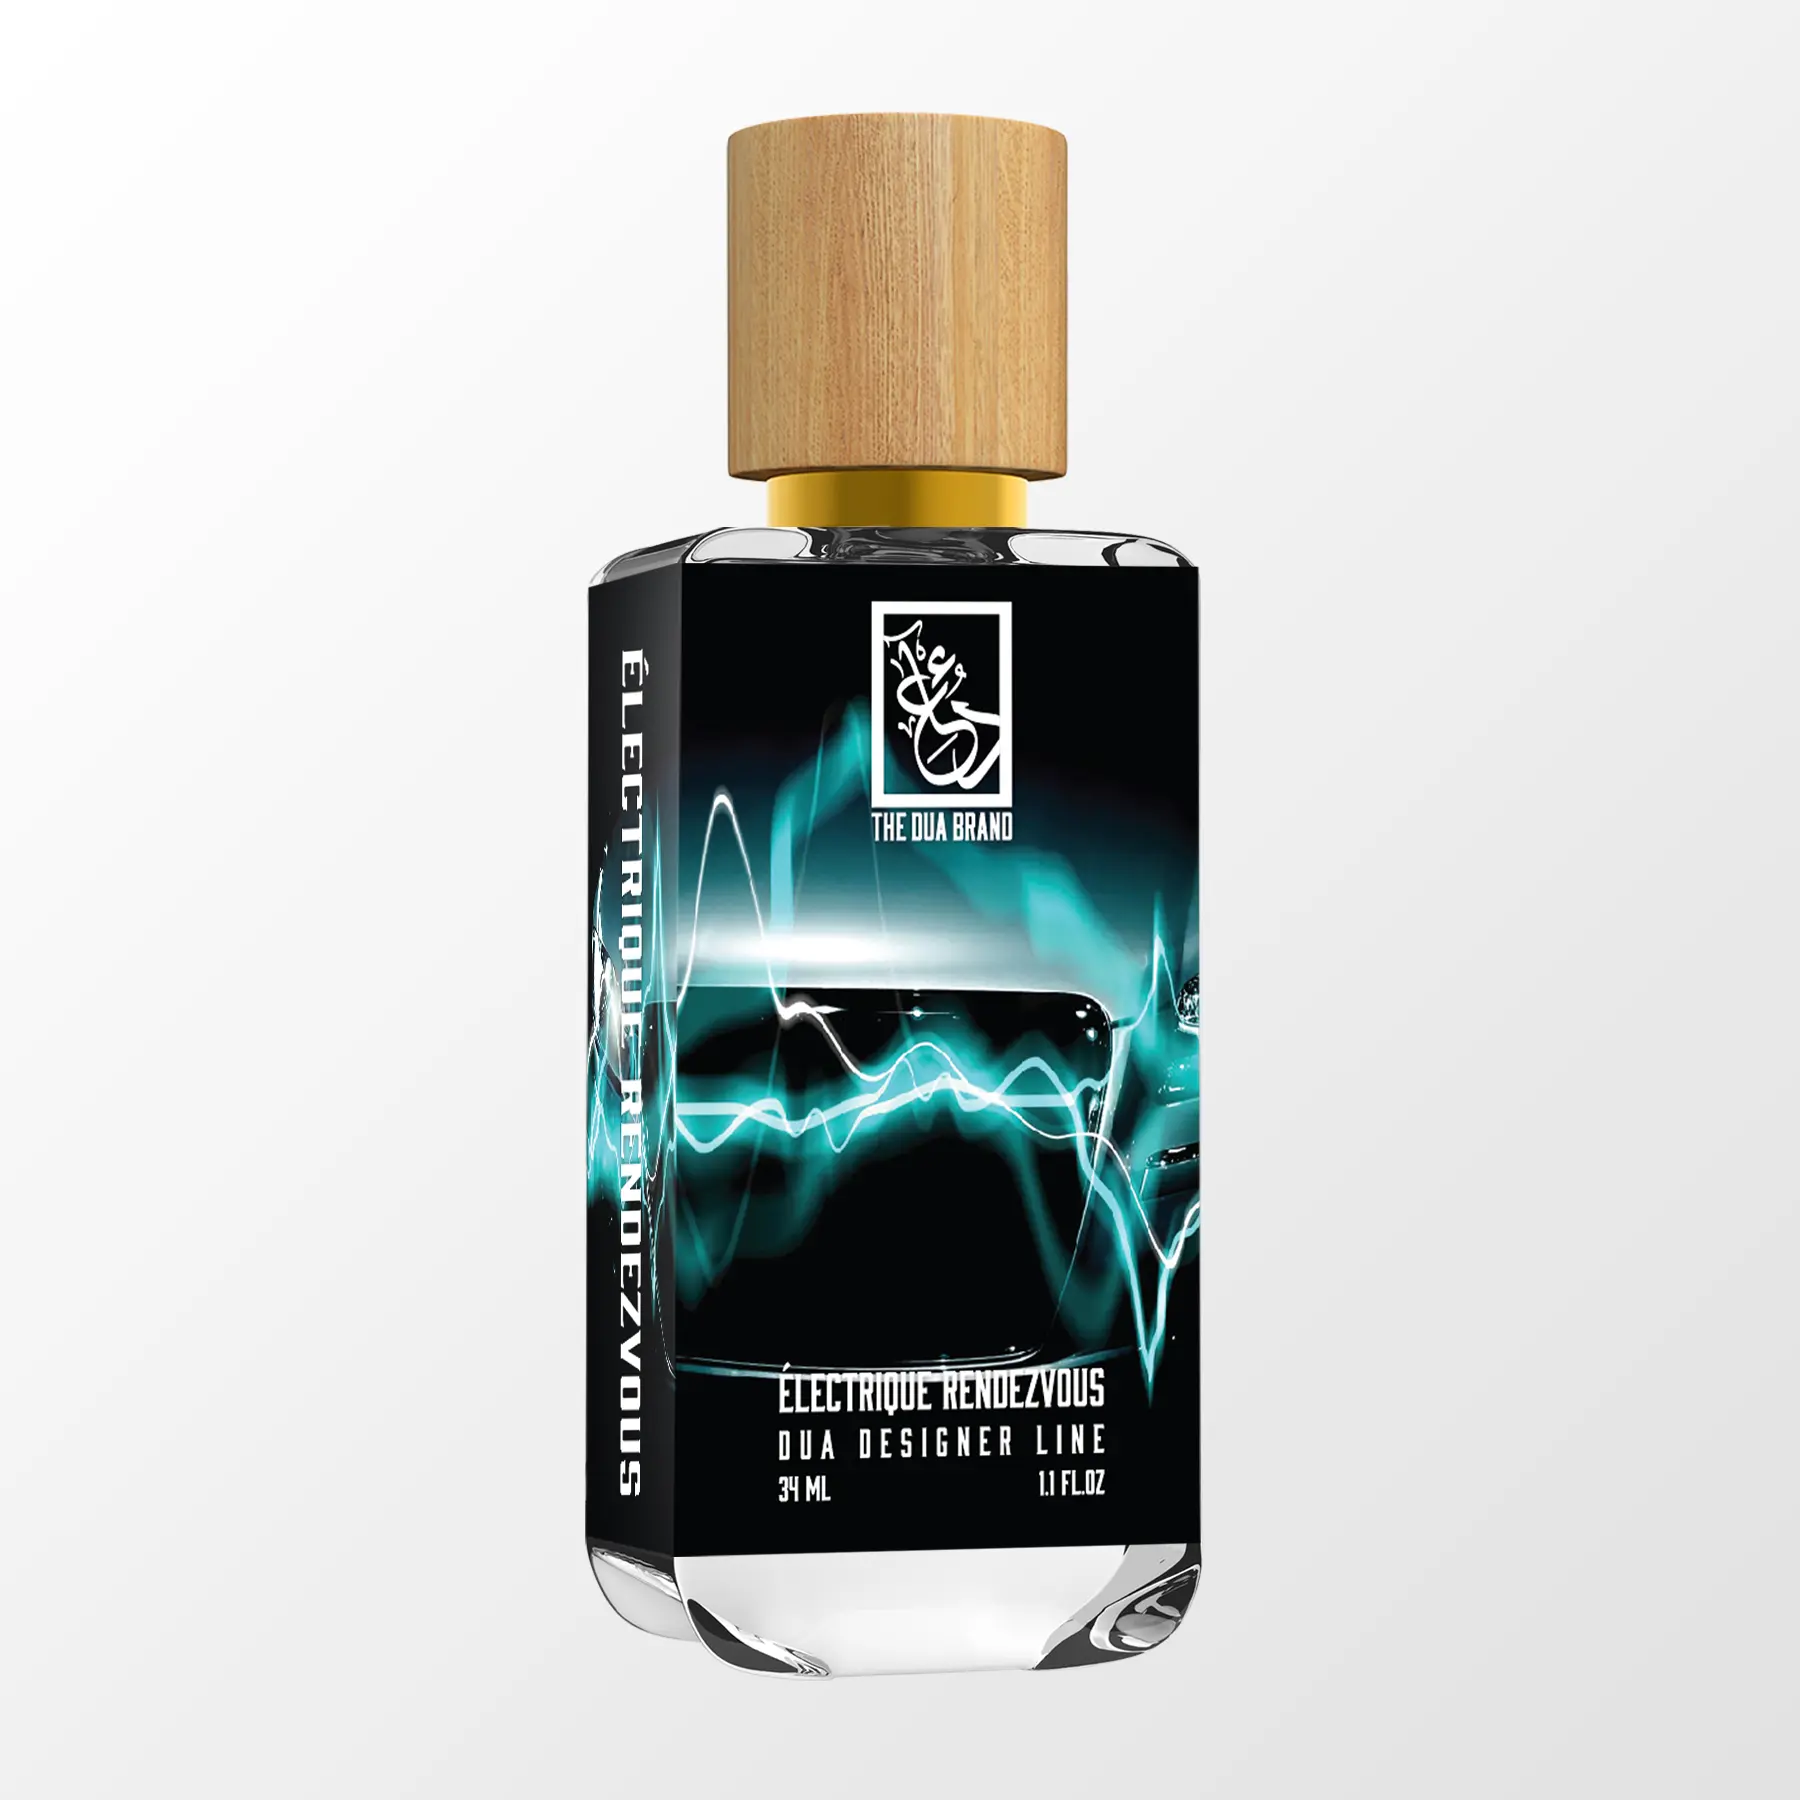 La Nuit de L'Homme Bleu Electrique by YSL type Perfume –